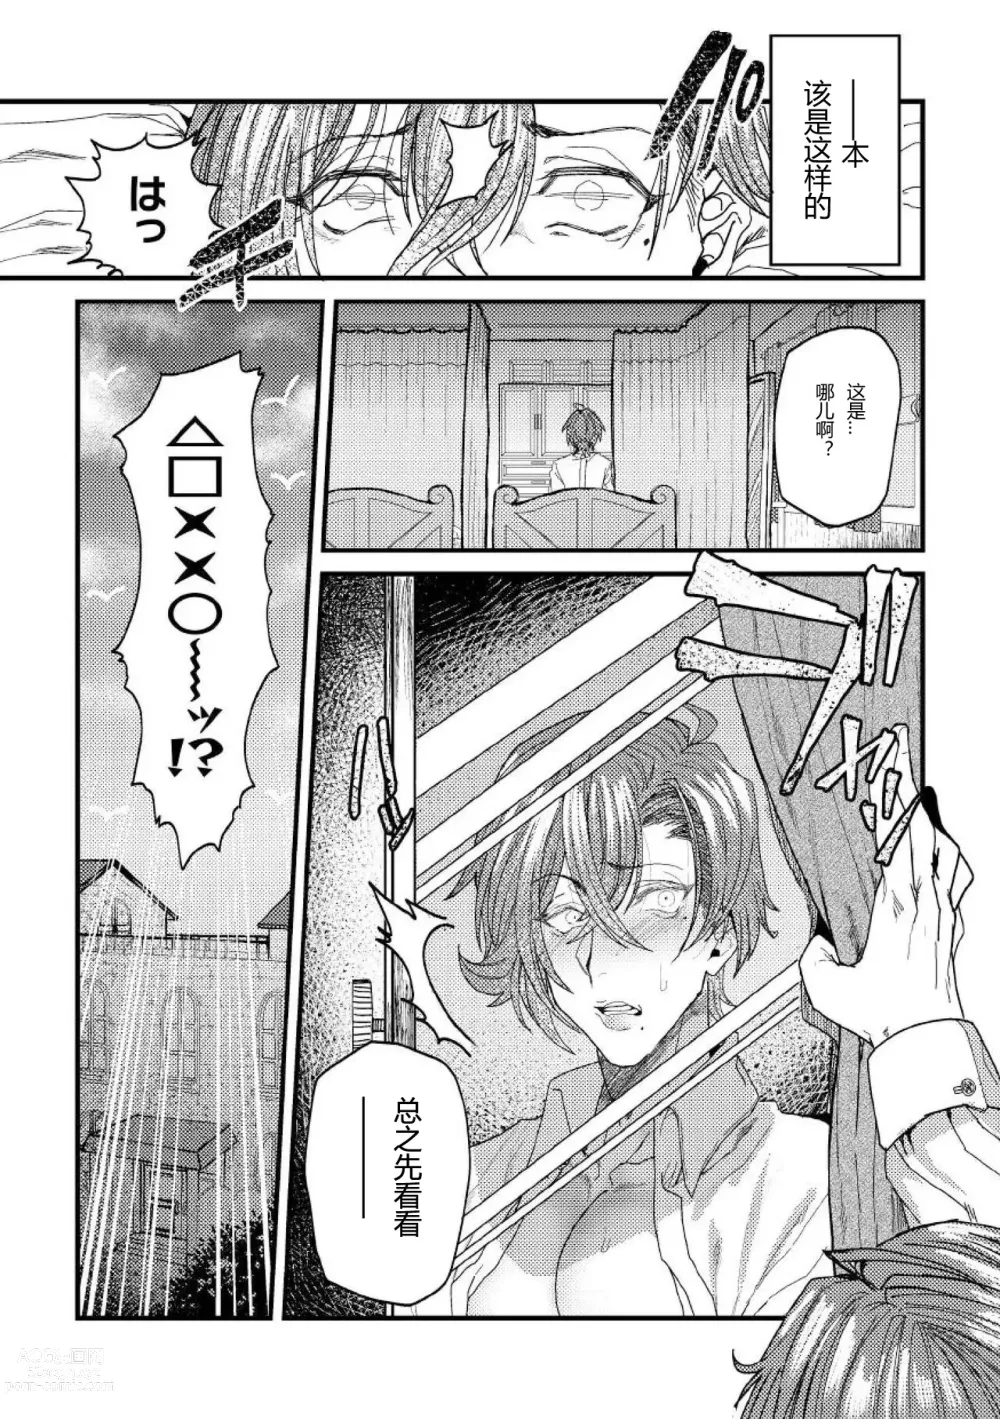 Page 5 of manga 转生校园黄油然后上位女主肉便器堕